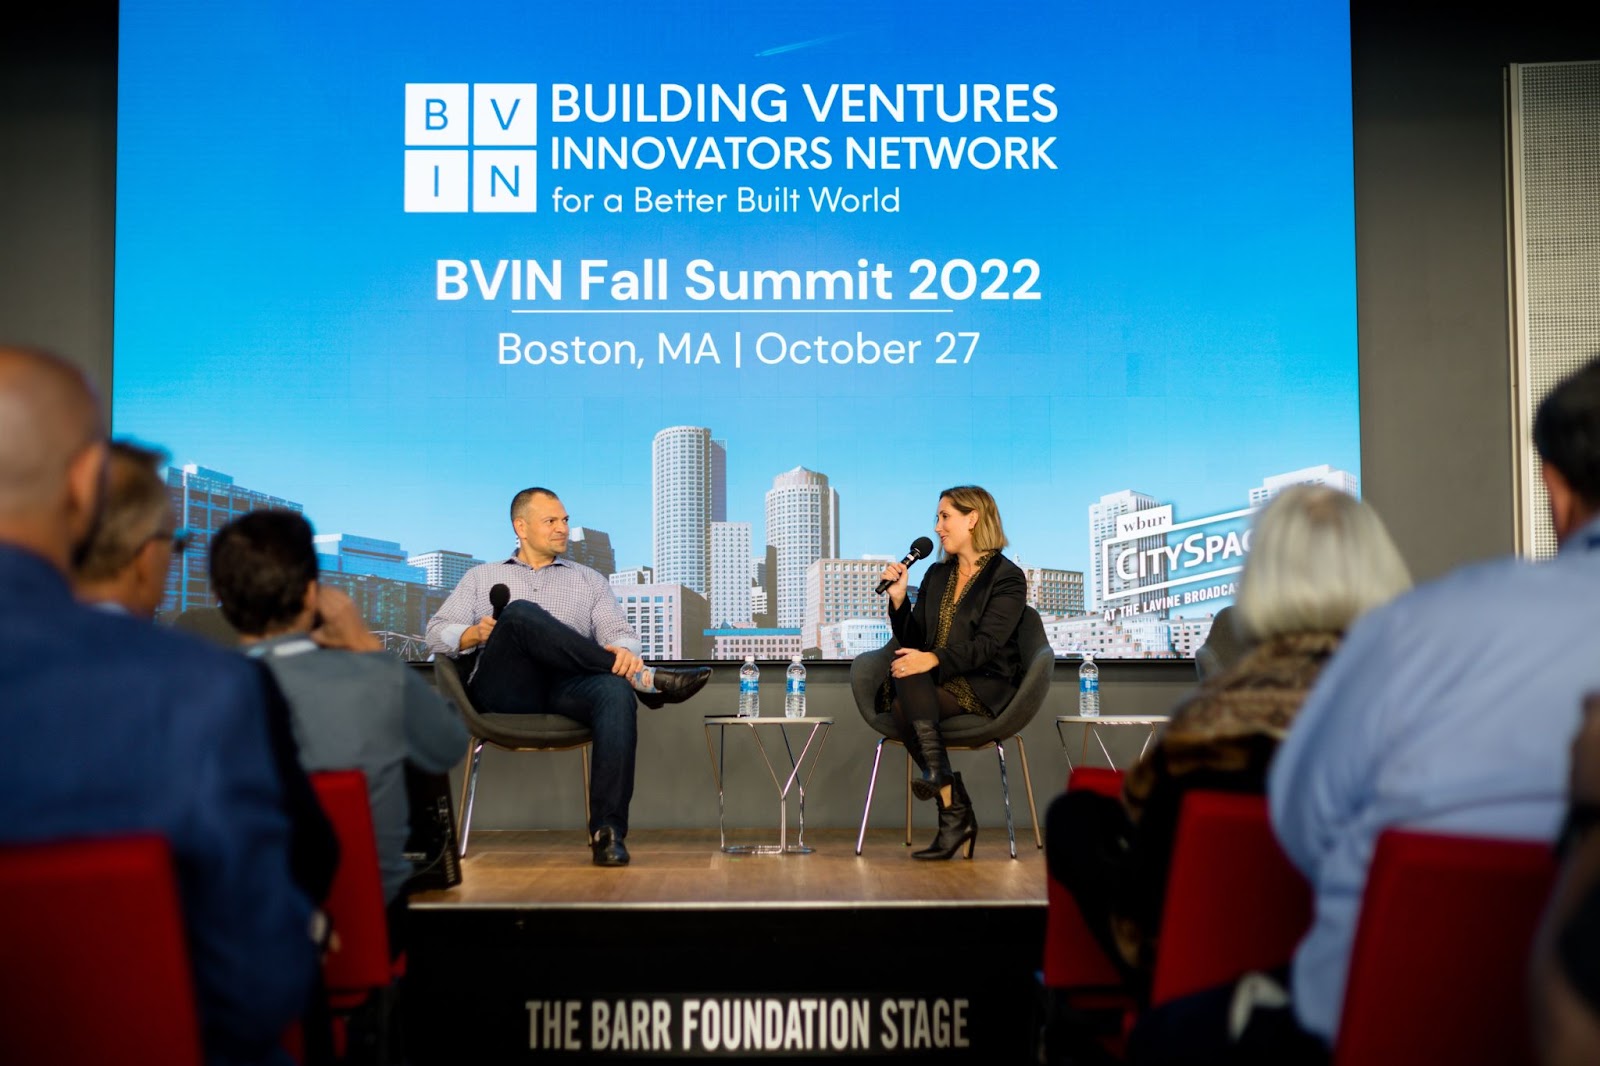 BVIN Fall Summit 2022